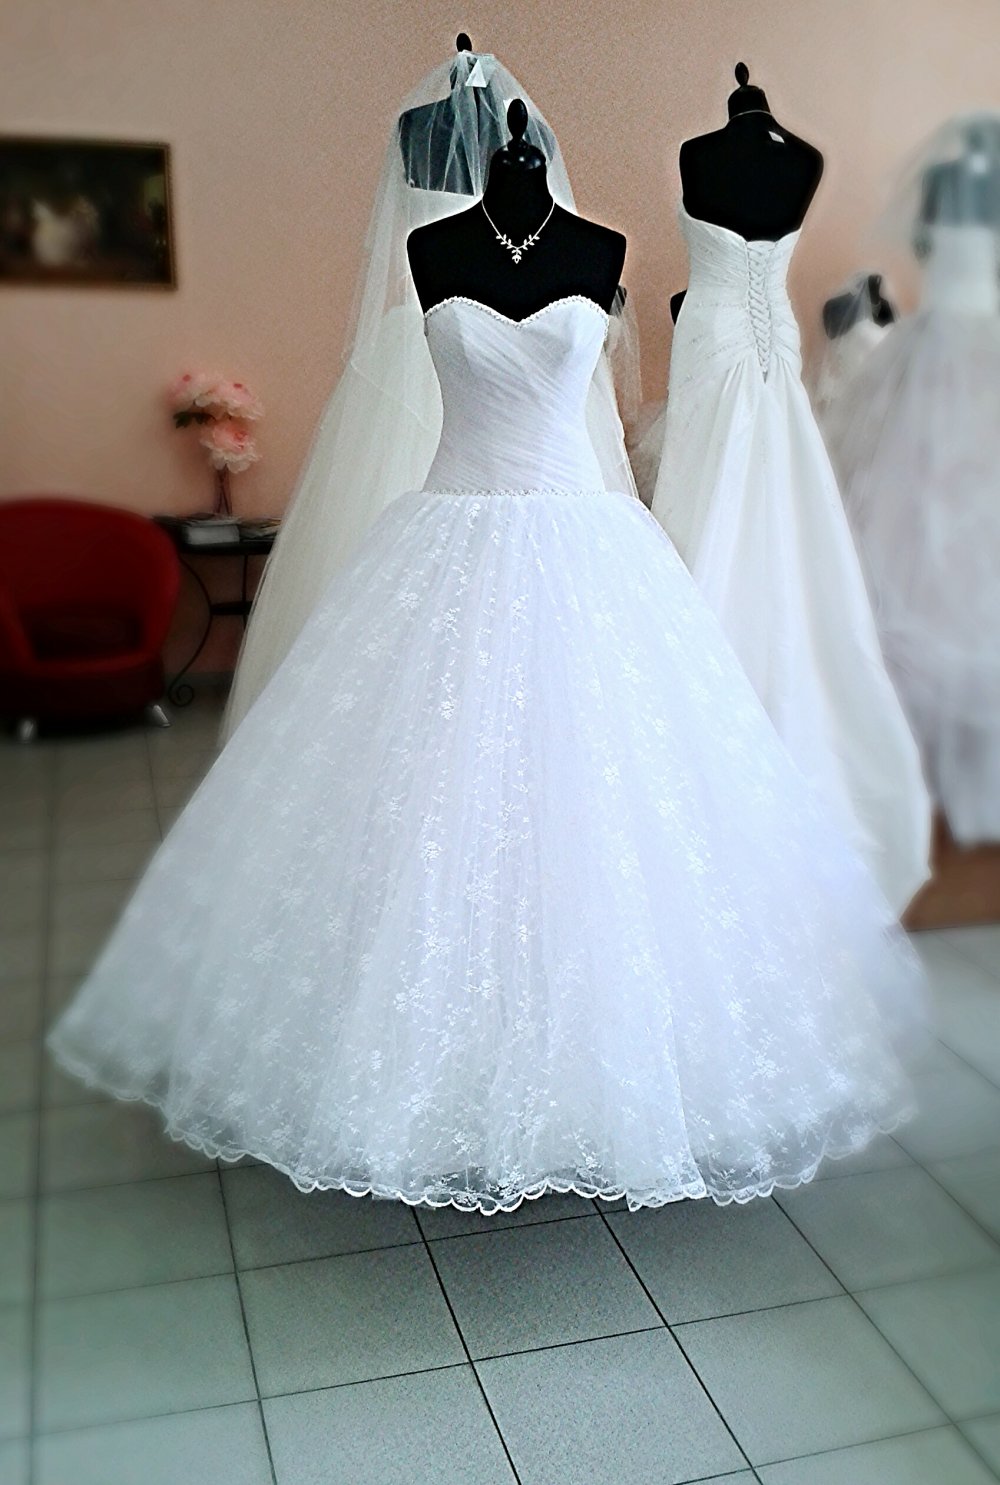 Свадебное платье "Эмилия", цвет белый, размер 44. Верхний слой юбки из нежного кружева. По поясу и вершу корсета тонкая отстрочка из жемчуга и страз.